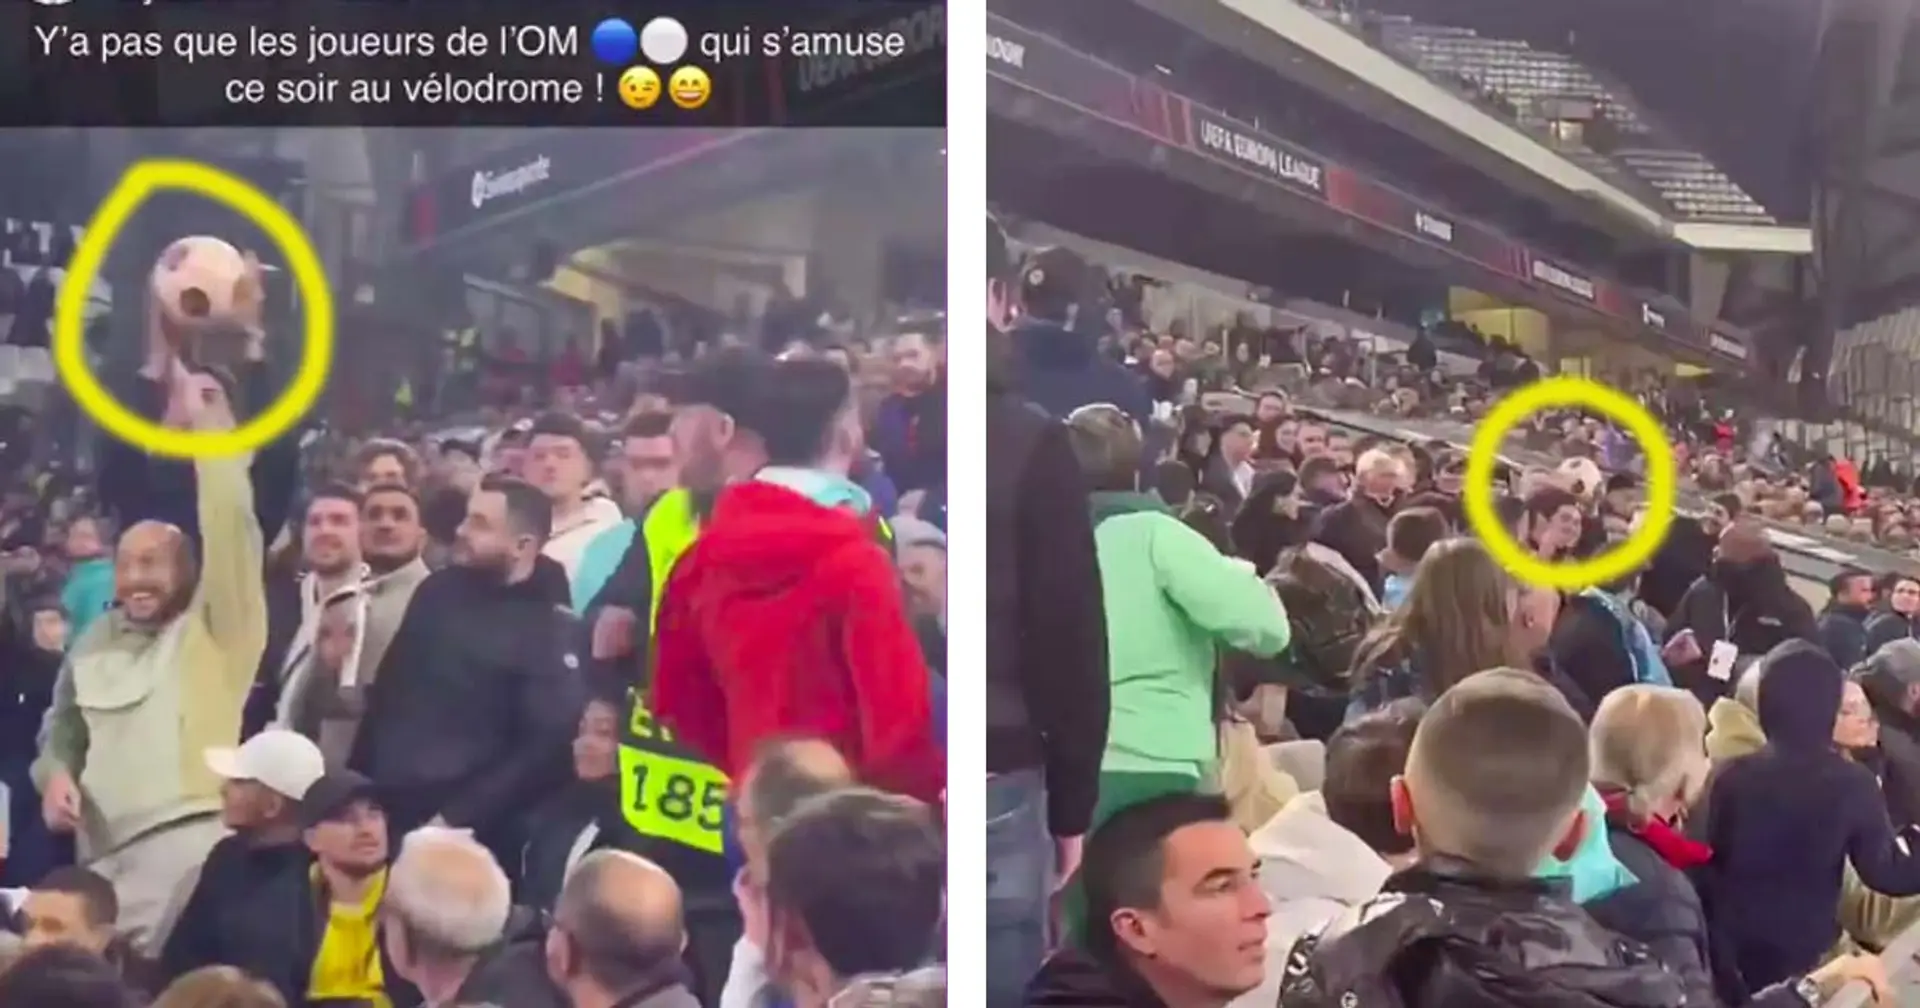 Capturé : Les supporters de l'OM se passent un ballon de match entre eux en tribune devant les stadiers impuissants